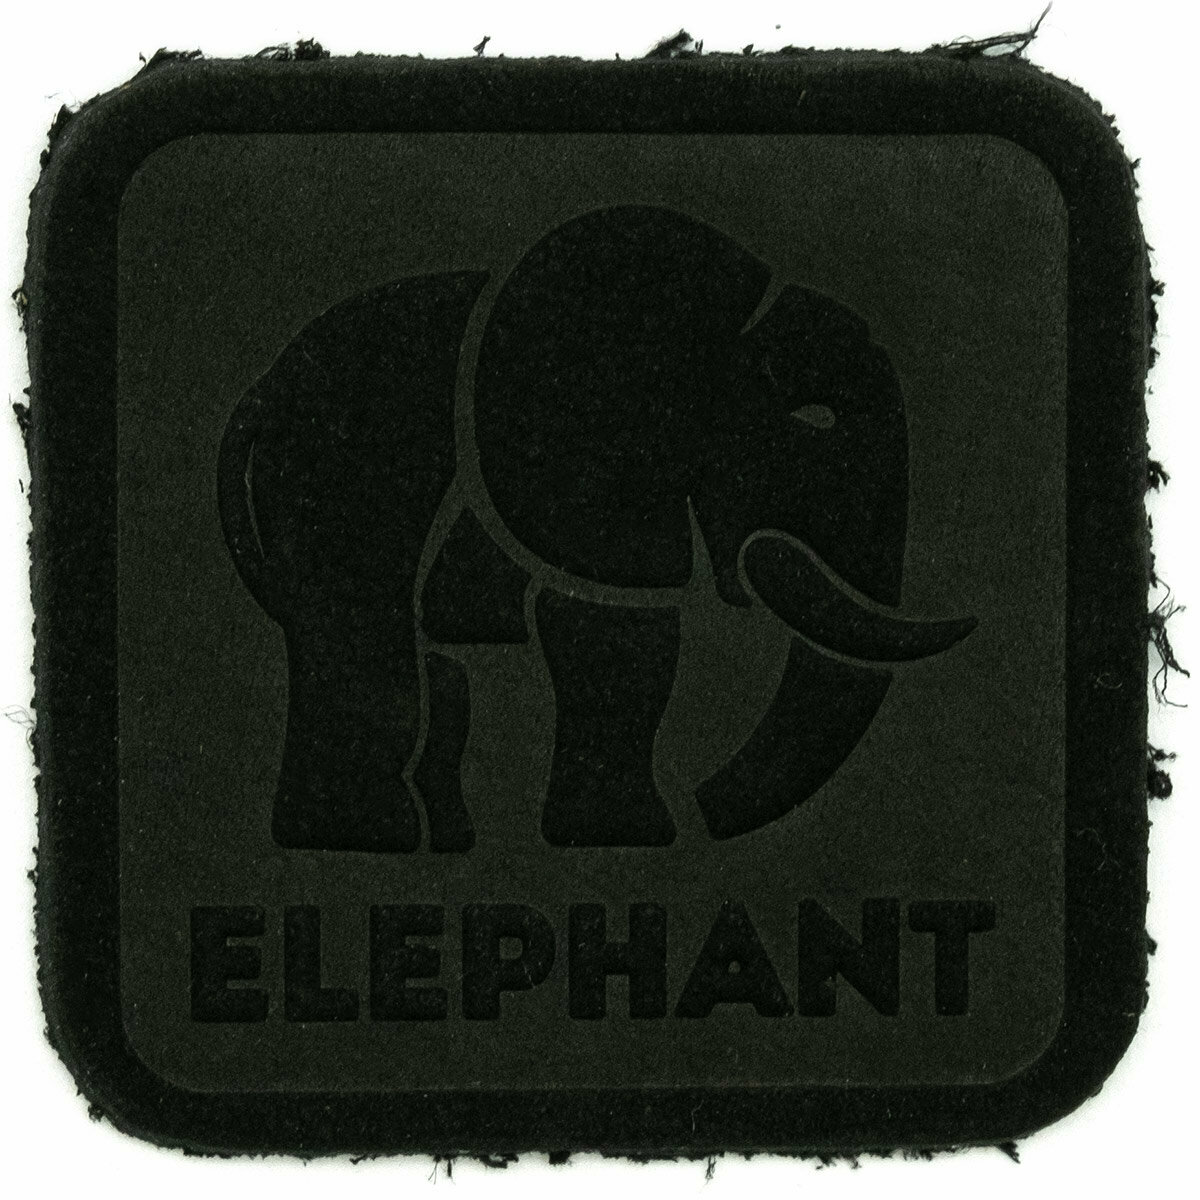 5003 Термоаппликация из замши Elephant 3,69*3,72см, 100% кожа (433 черный)